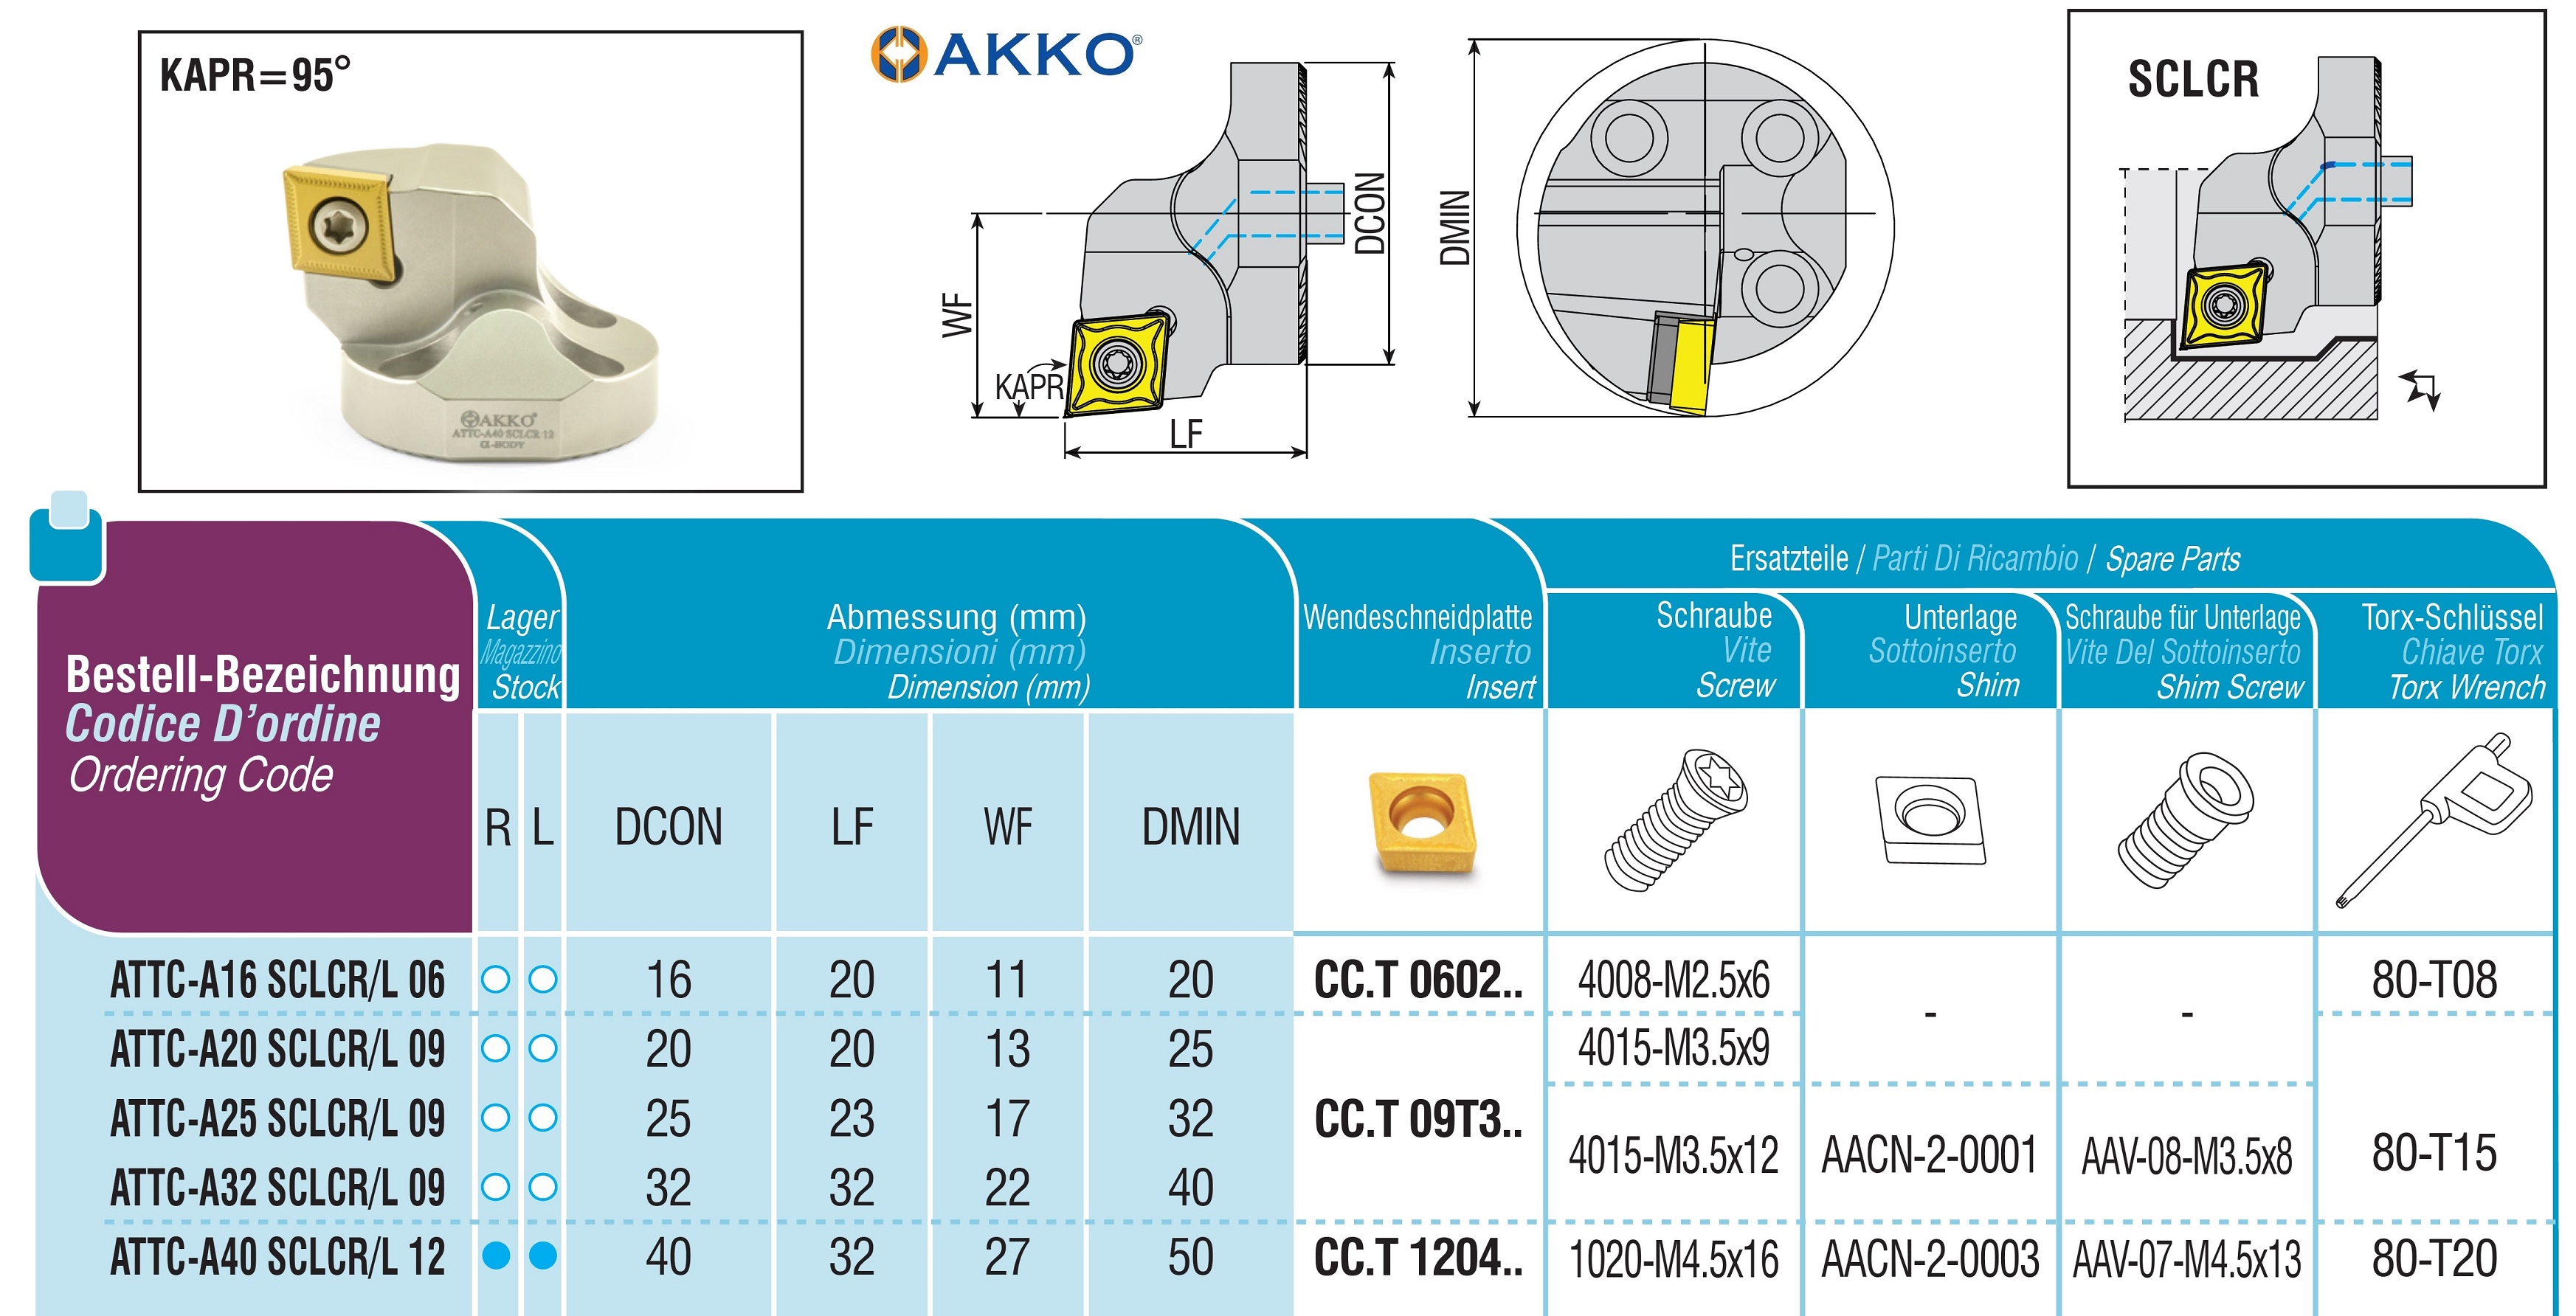 AKKO-Wechselkopf für schwingungsgedämpfte Bohrstange, ø = 40 mm, für Wendeplatte CC.T 1204.., mit Innenkühlung, für eine hohe Oberflächenqualität bei großer Auskraglänge, linke Ausführung 